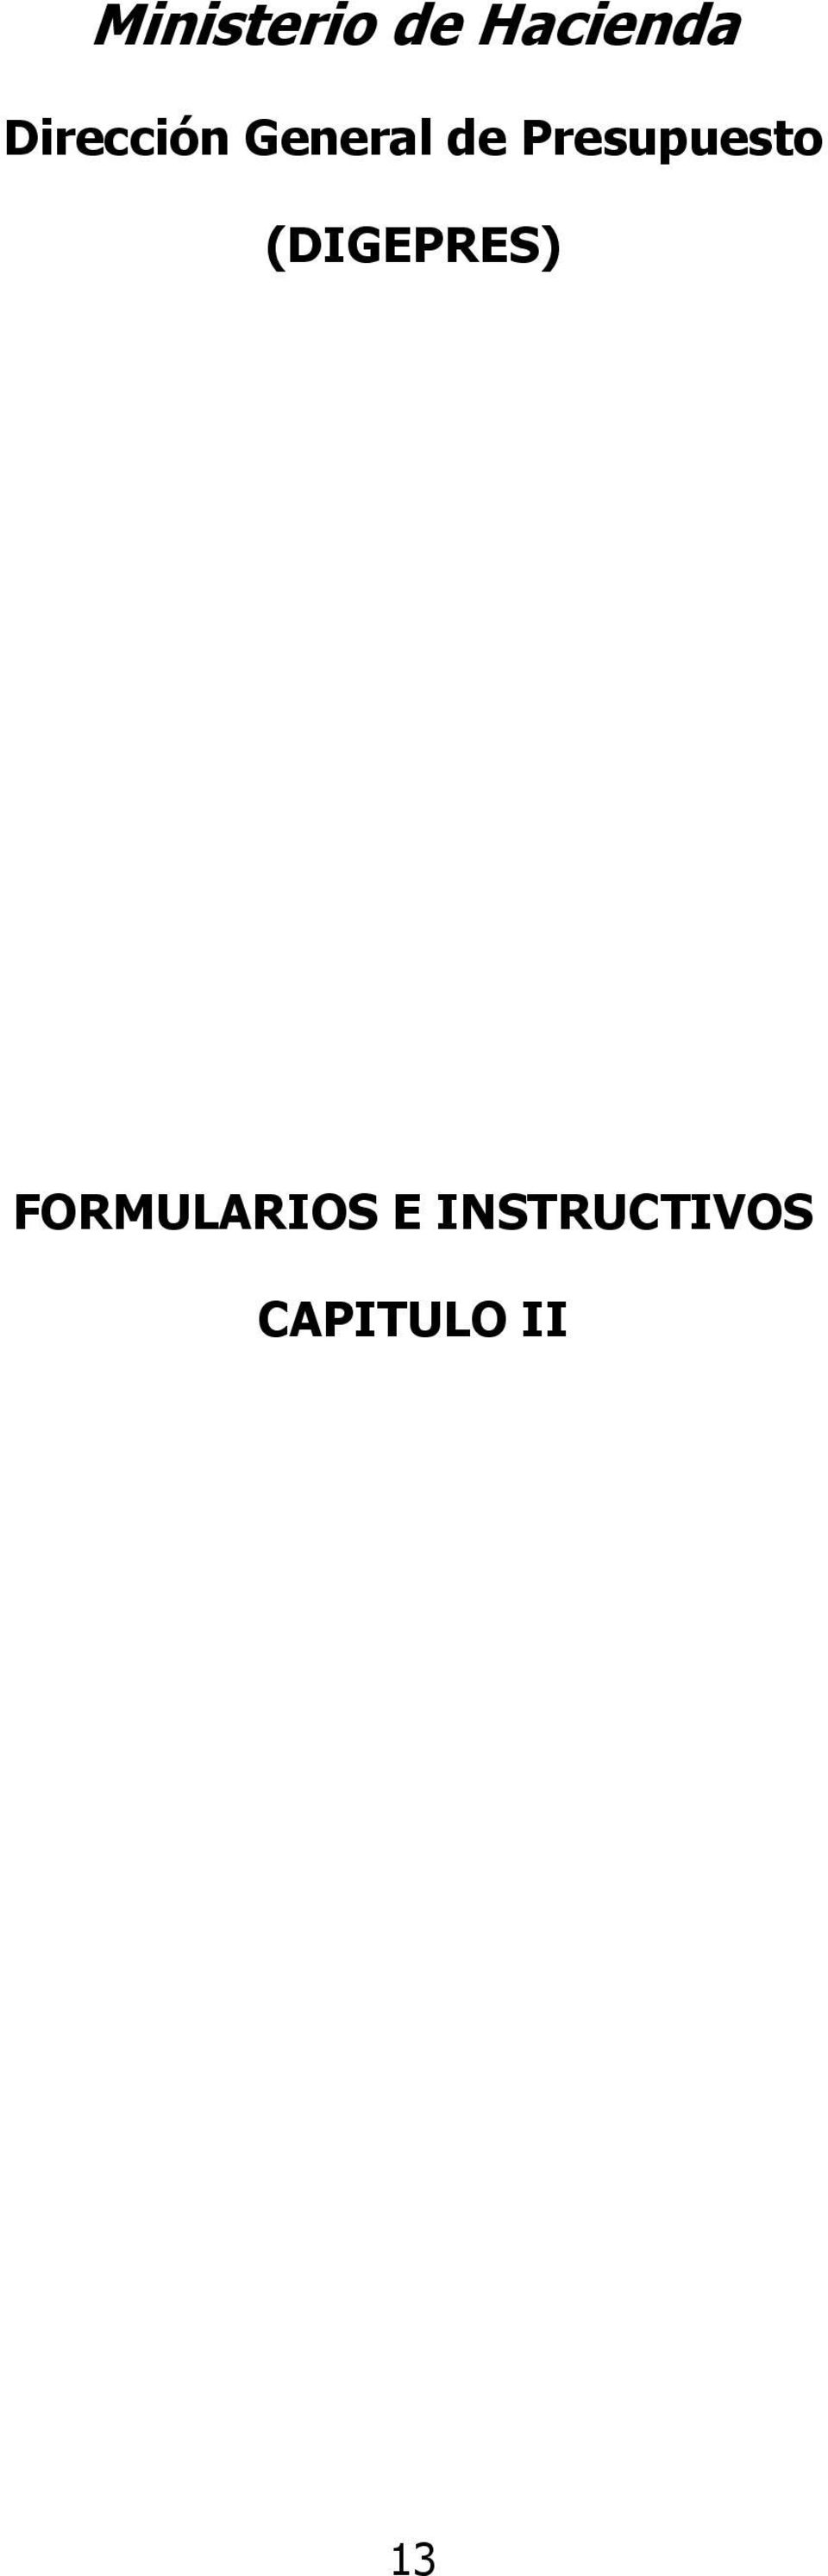 FORMULARIOS E